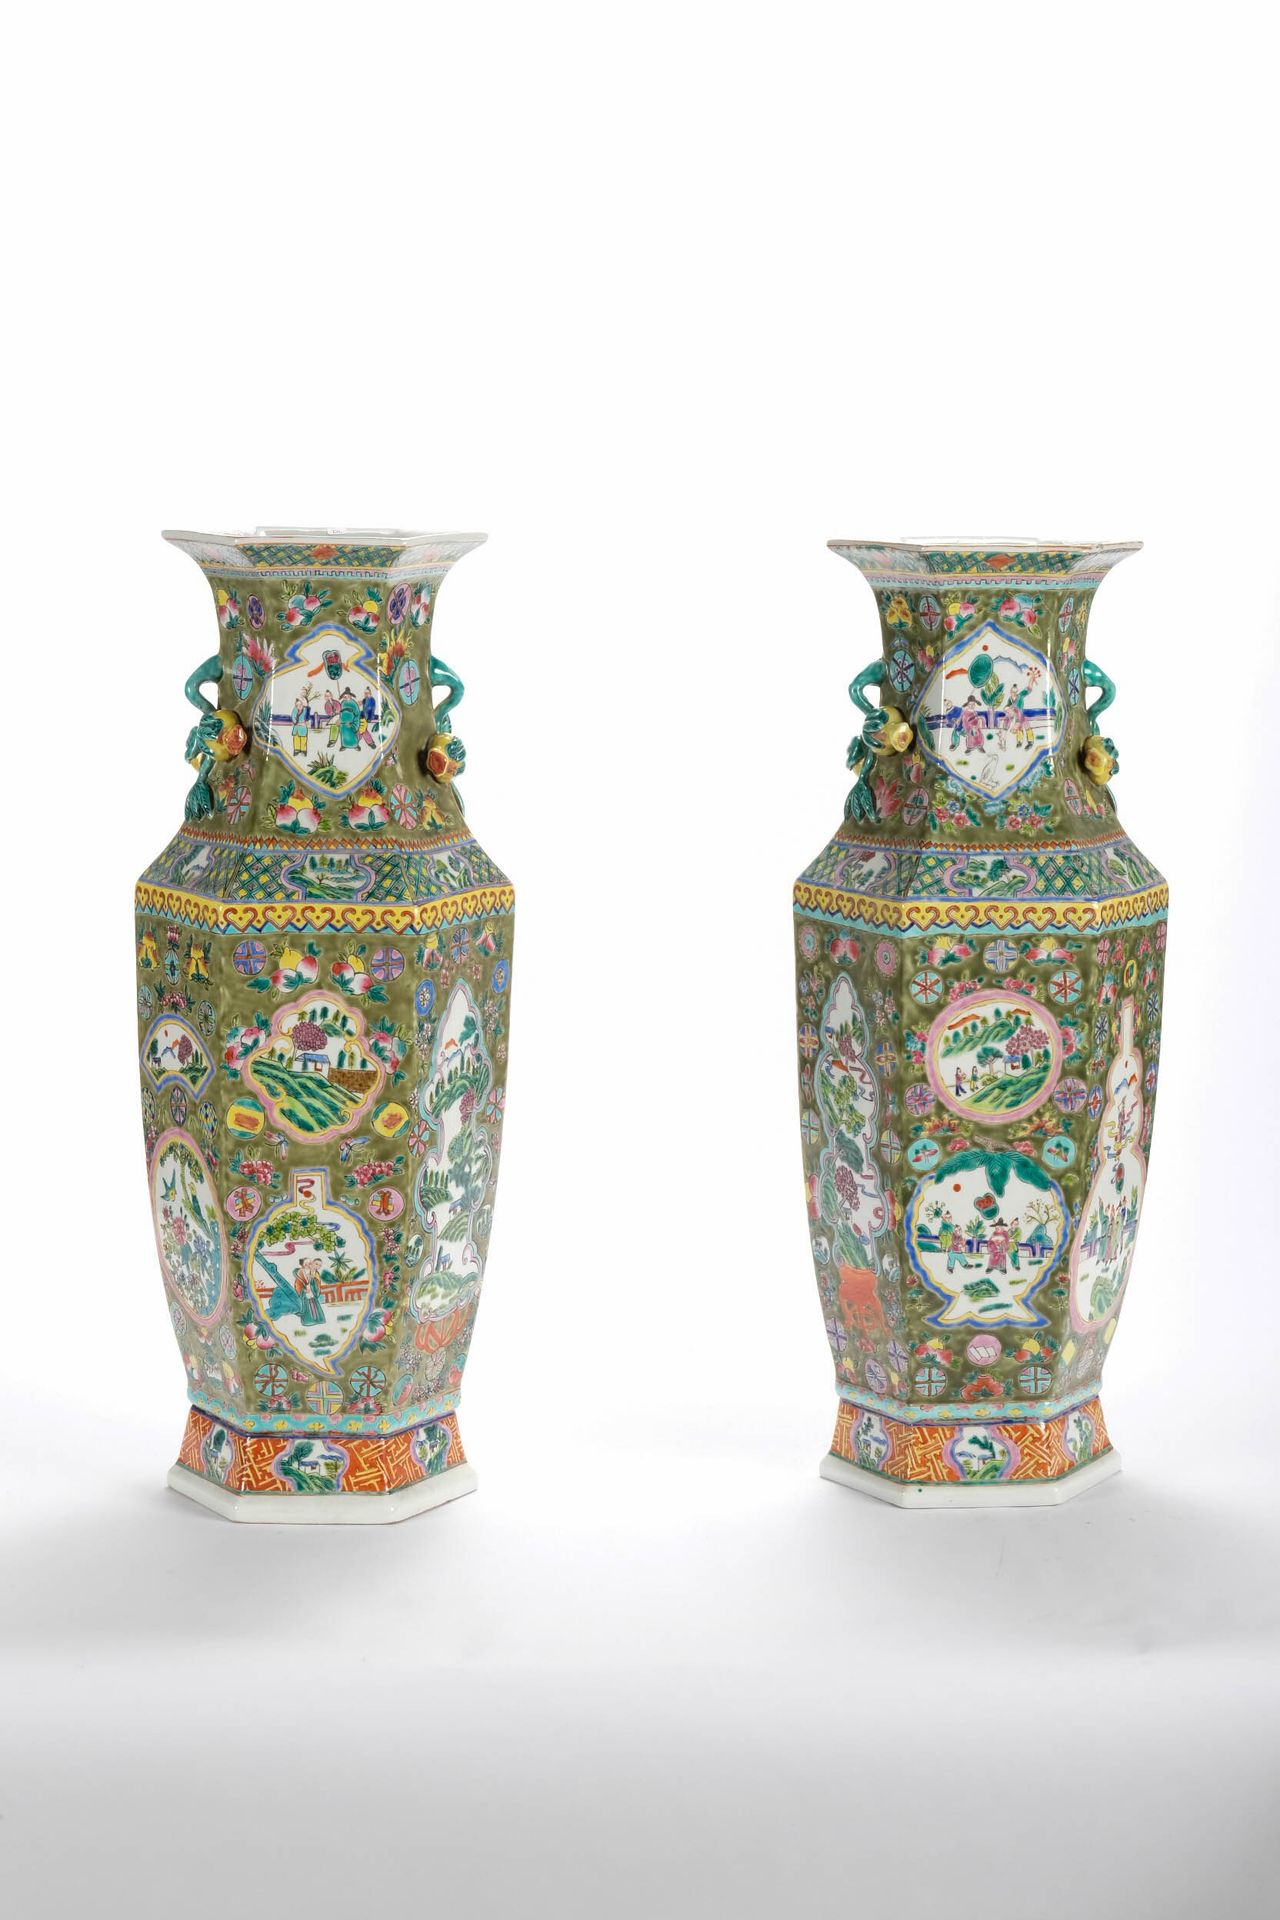 CHINE (CHINA, 中国) 一对六边形的瓷质栏杆花瓶，装饰有粉彩。高63厘米。其中一个花瓶破损后被粘回。